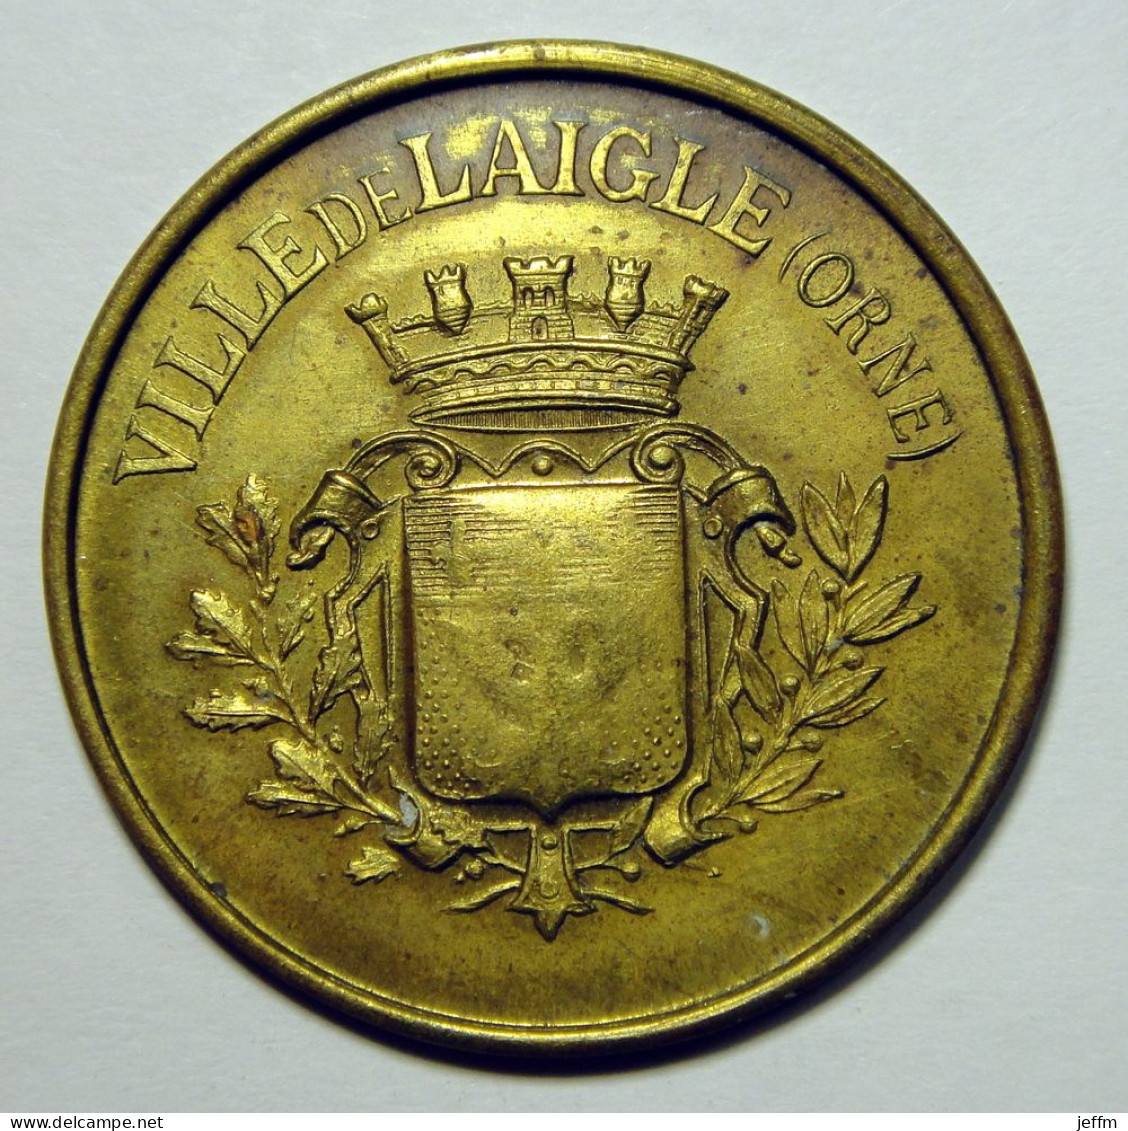 Ville De Laigle (Orne) - Bureau De Bienfaisance - BOIS - Monetary / Of Necessity